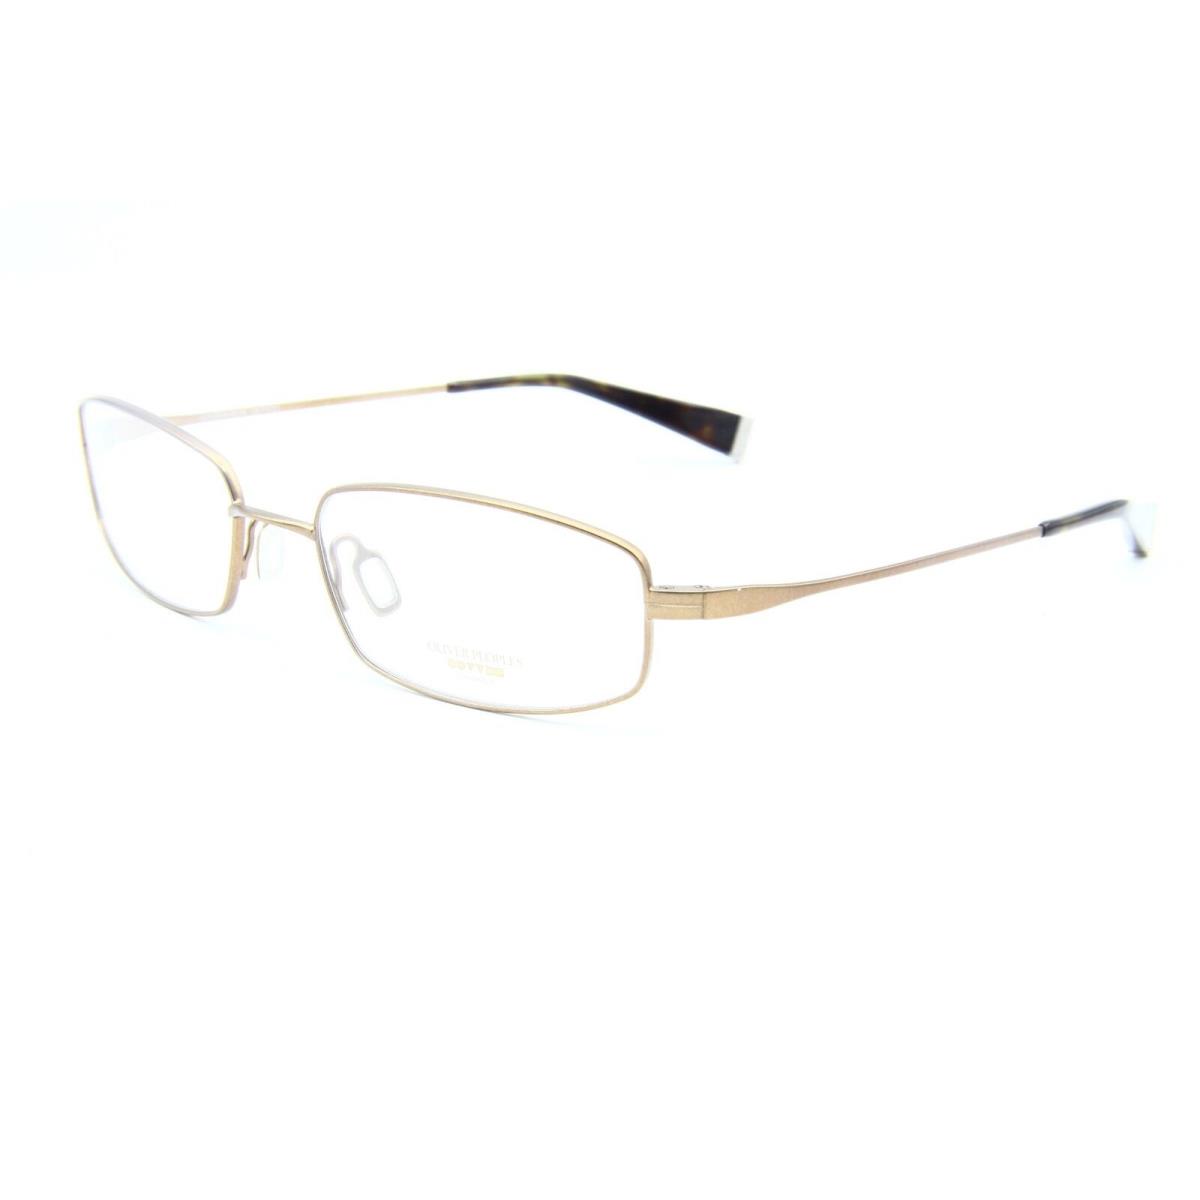 Oliver Peoples Winston Aut Brown Eyeglasses Frame 54-18